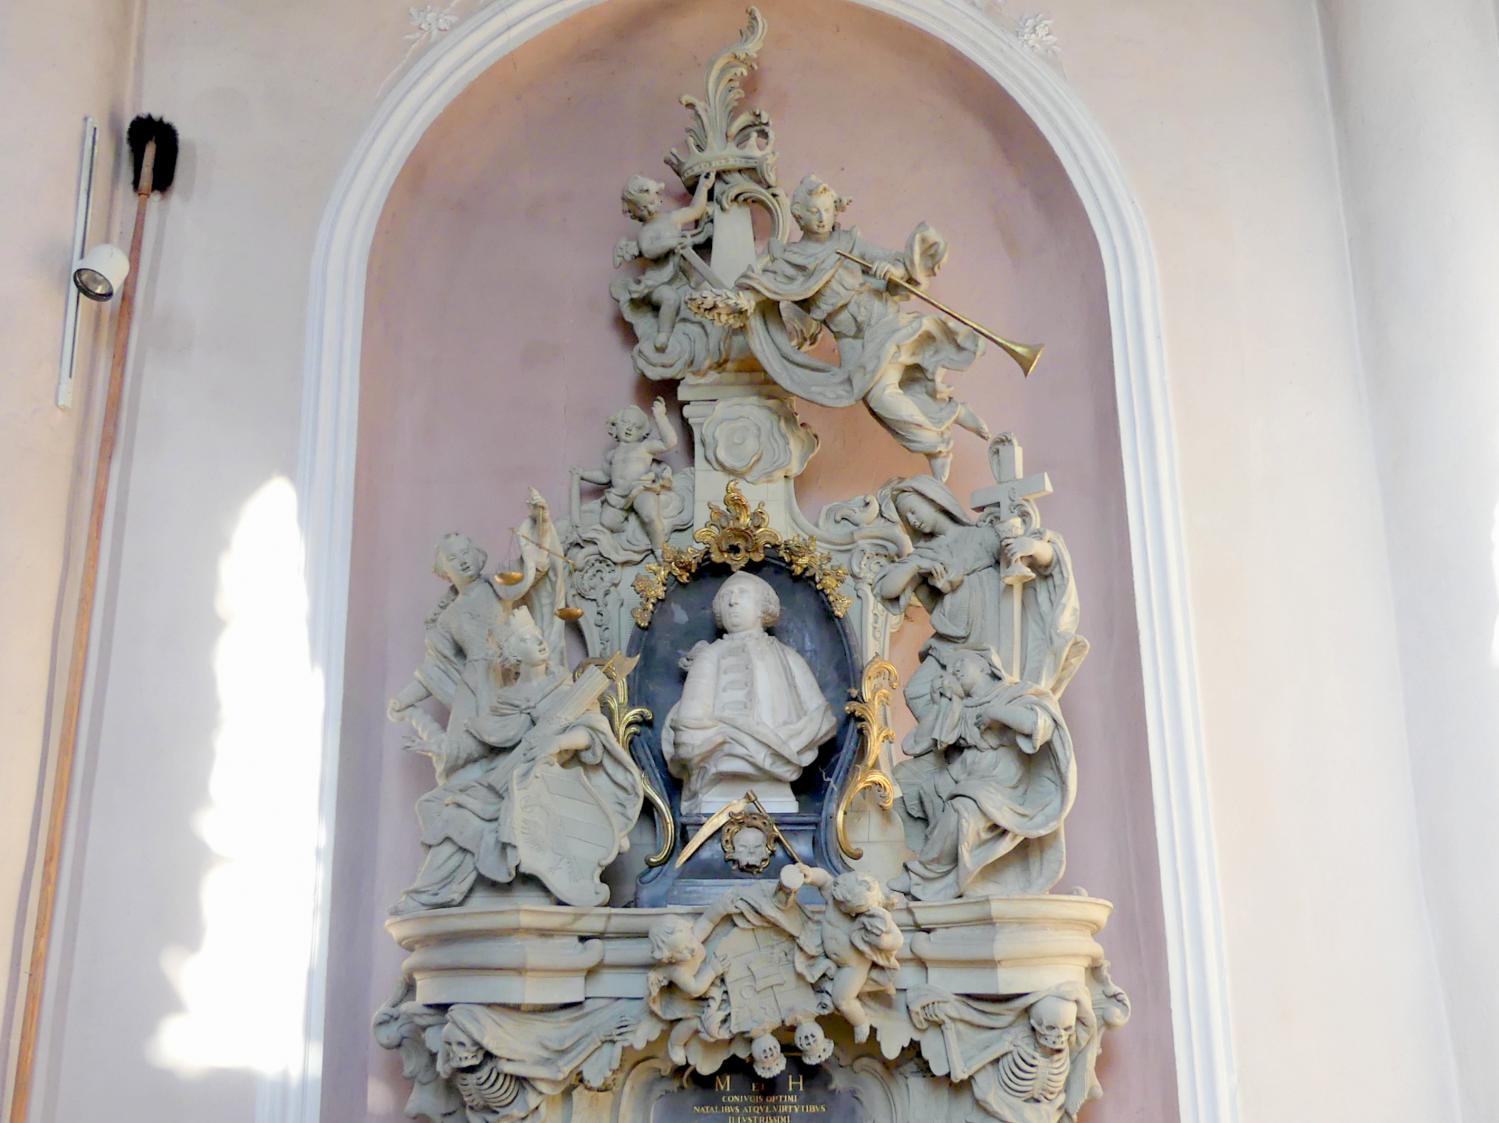 Joseph Bonaventura Mutschele (1762–1766), Grabmal für Johann Sigmund Pfinzing, Großgründlach, ev. Pfarrkirche St. Laurentius, nach 1764, Bild 2/5